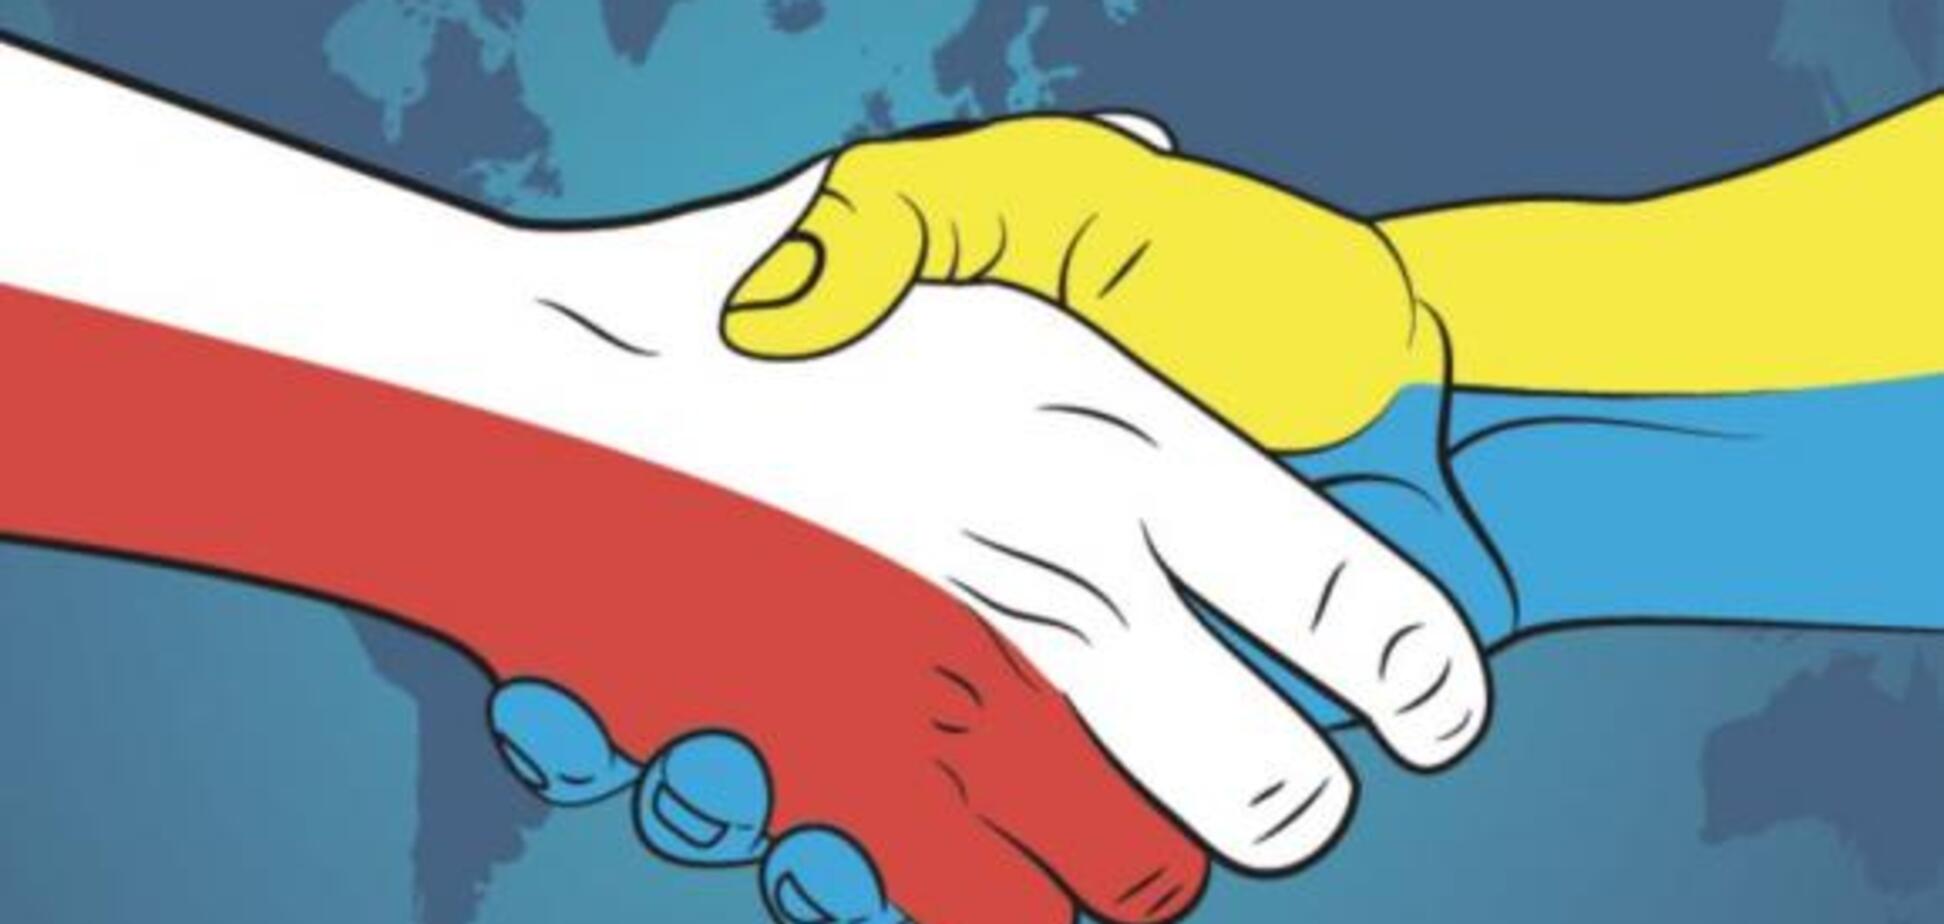 Польща з'ясує, як спецслужби РФ зіштовхують її з Україною